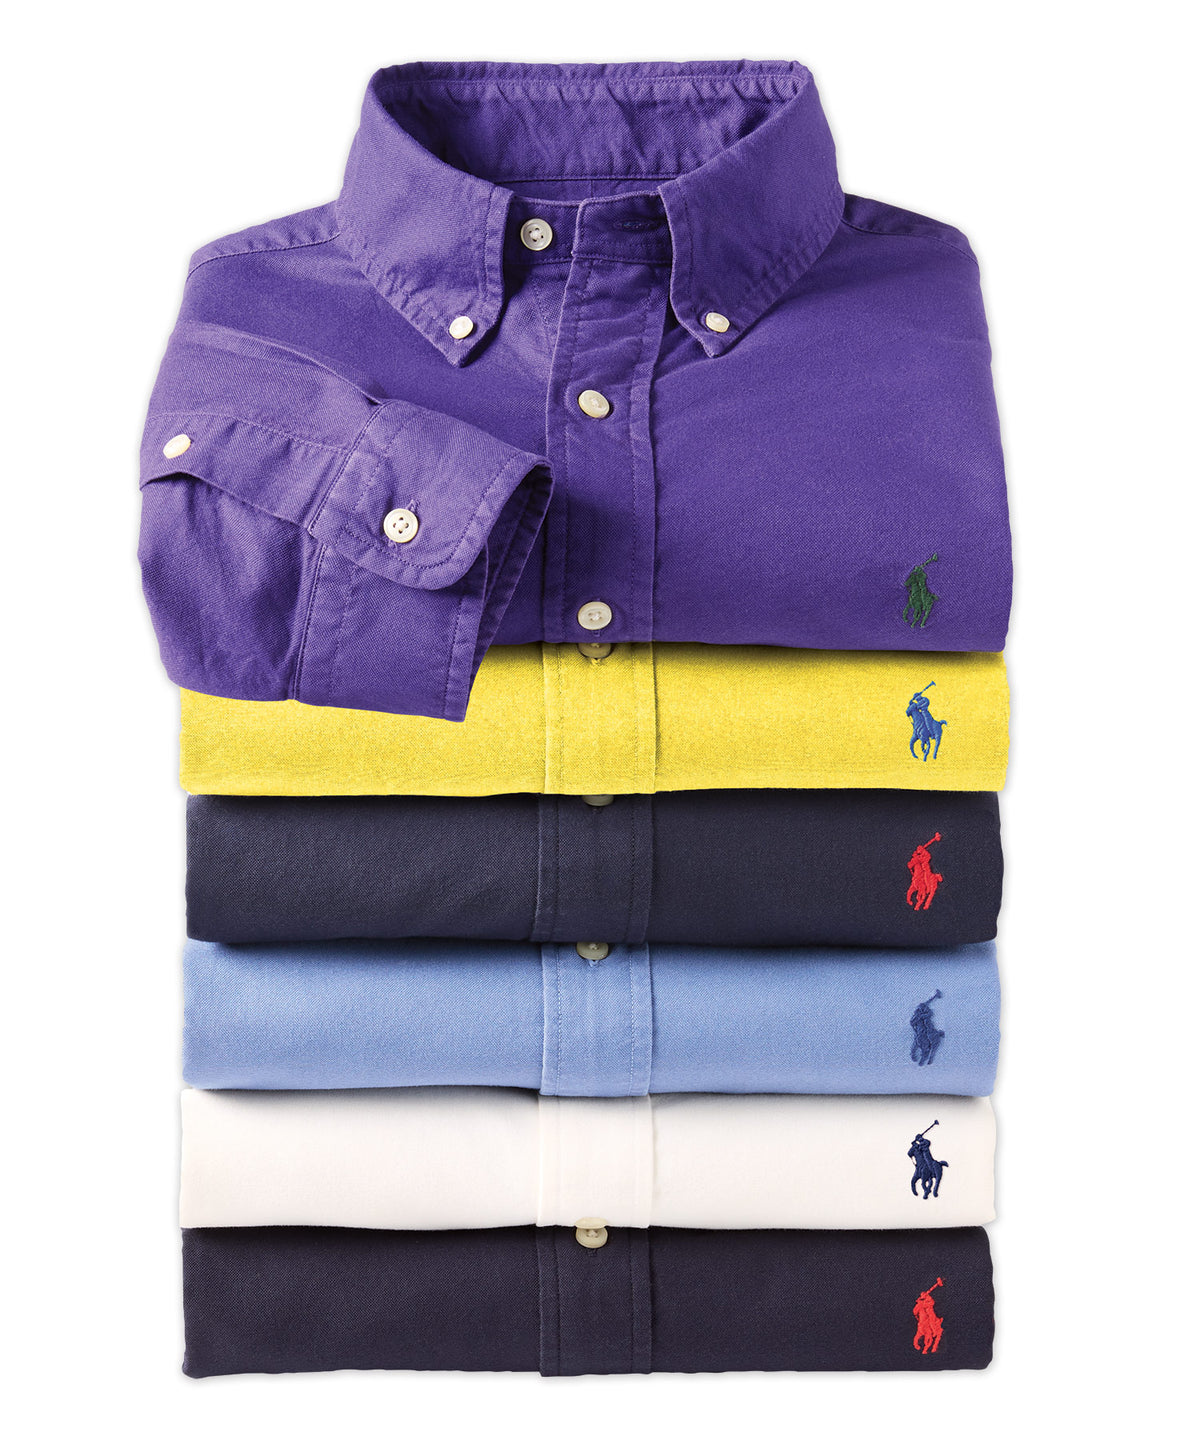 Polo Ralph Lauren Camicia sportiva Oxford tinta in capo a maniche lunghe, Men's Big & Tall